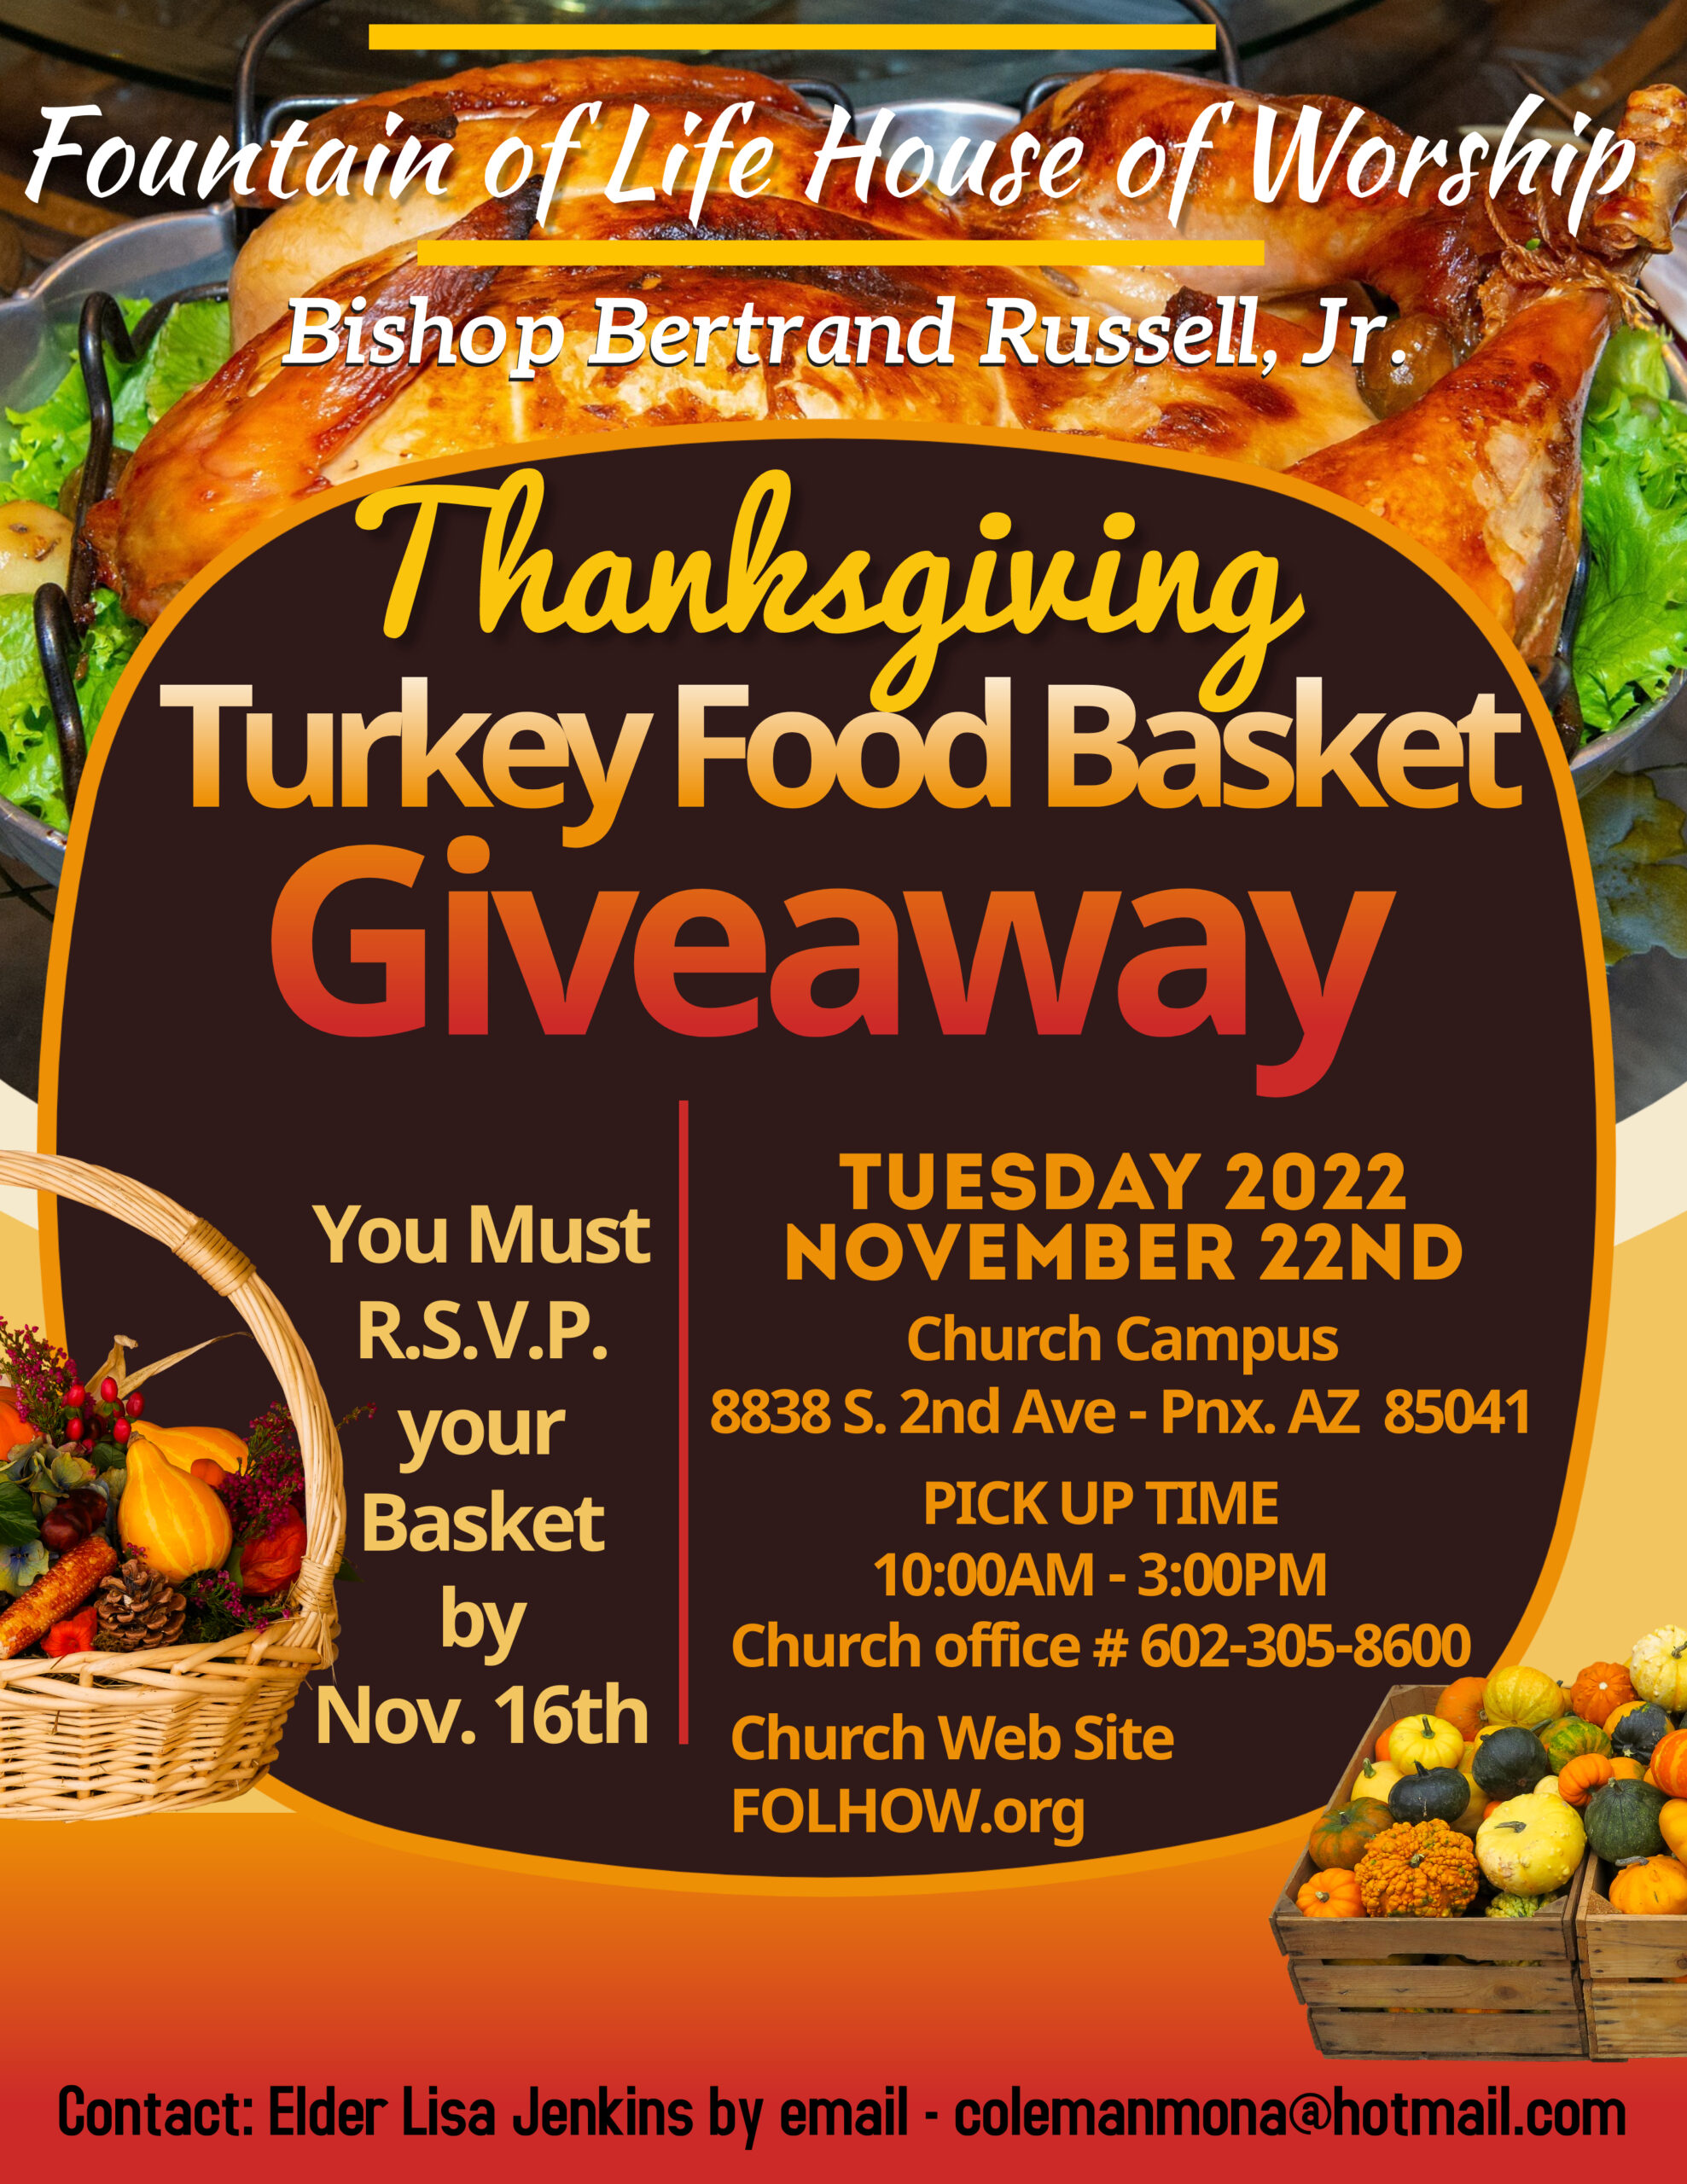 Thanksgiving Food Basket Giveaway - Nov. 22